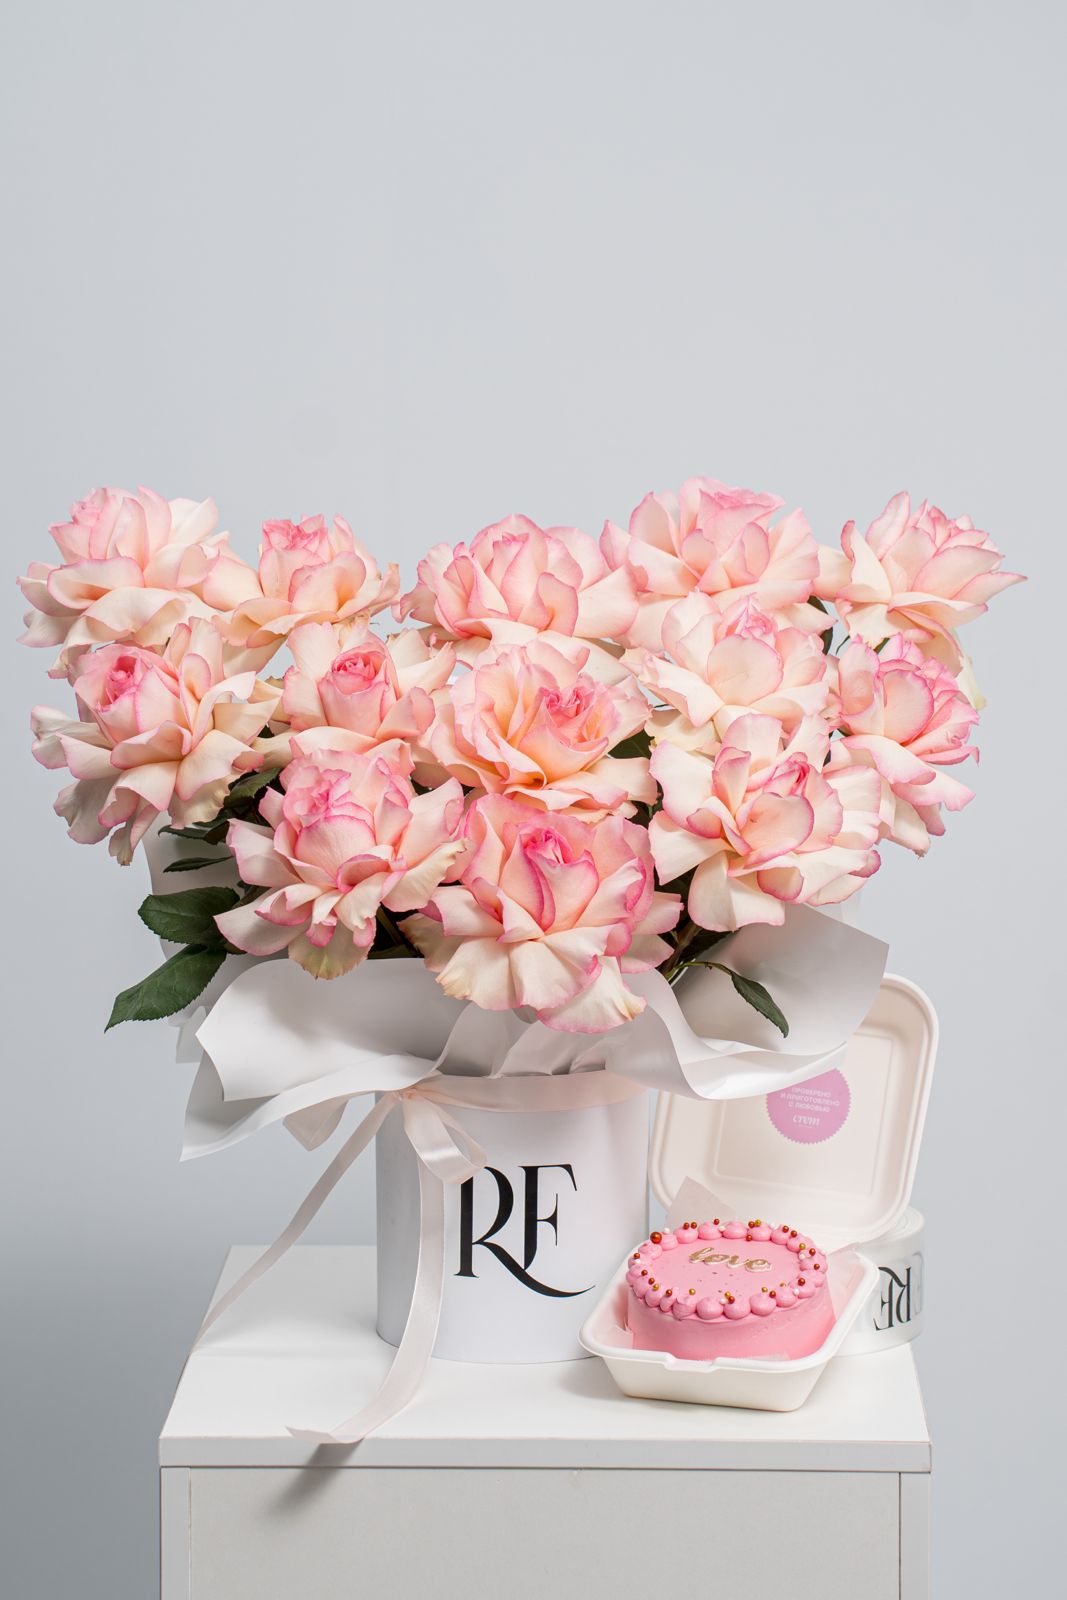 13 роз в коробке + бенто тортик  с доставкой по Усть-Каменогорске